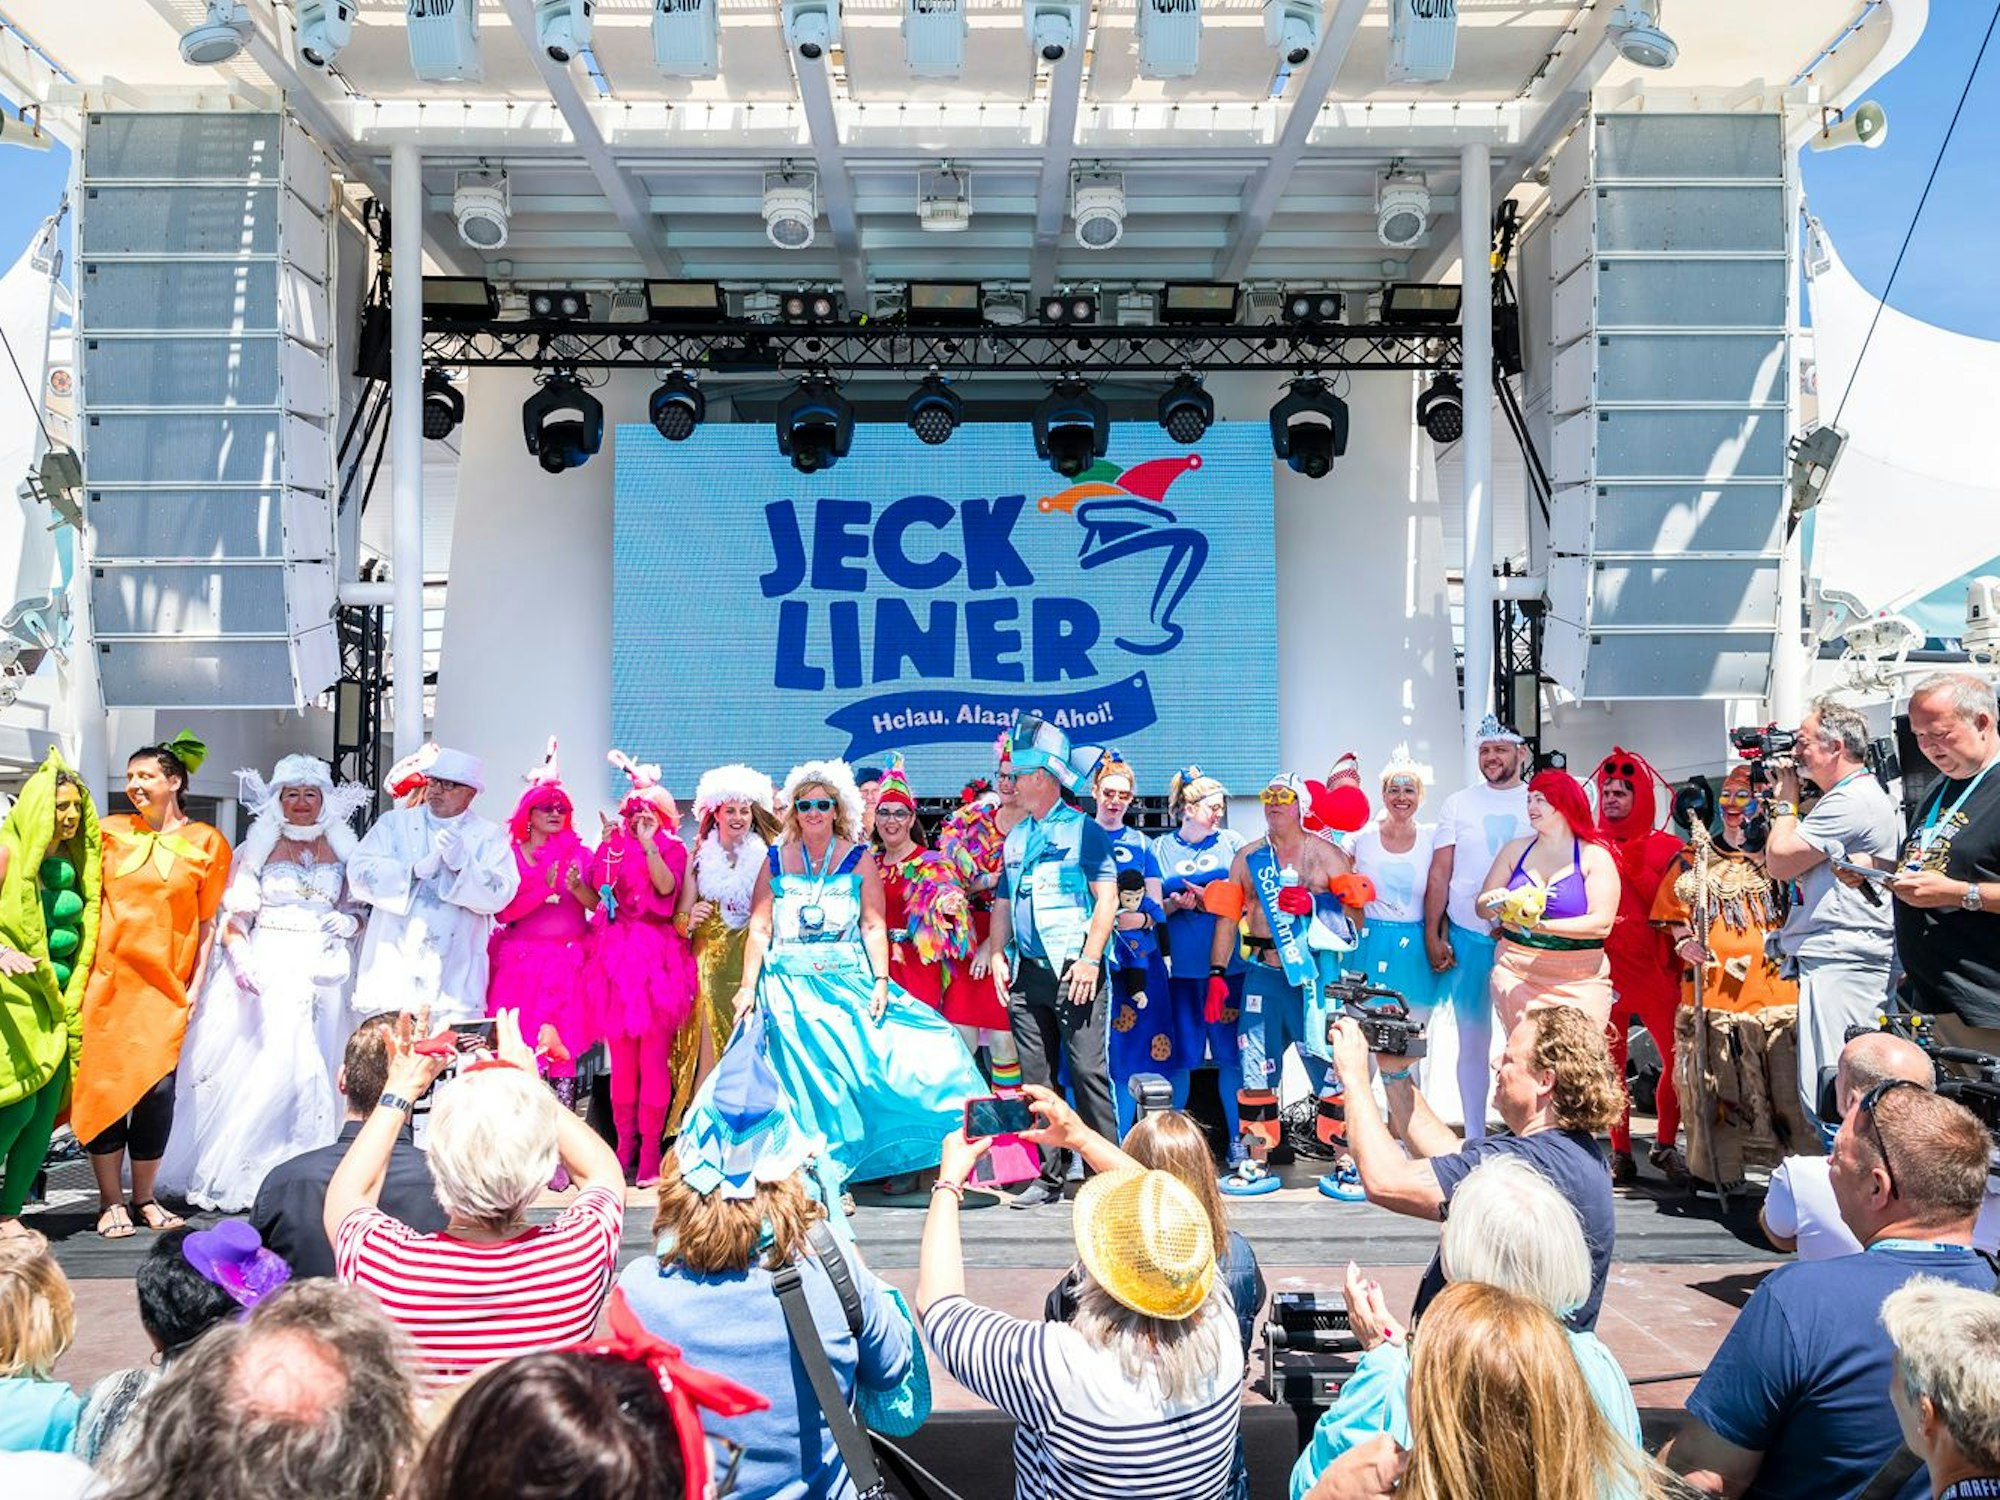 Das undatierte Foto zeigt verkleidete Karnevalistinnen und Karnevalisten, die auf und vor einer Bühne auf dem Kreuzfahrtschiff namens „Jeckliner“ feiern.